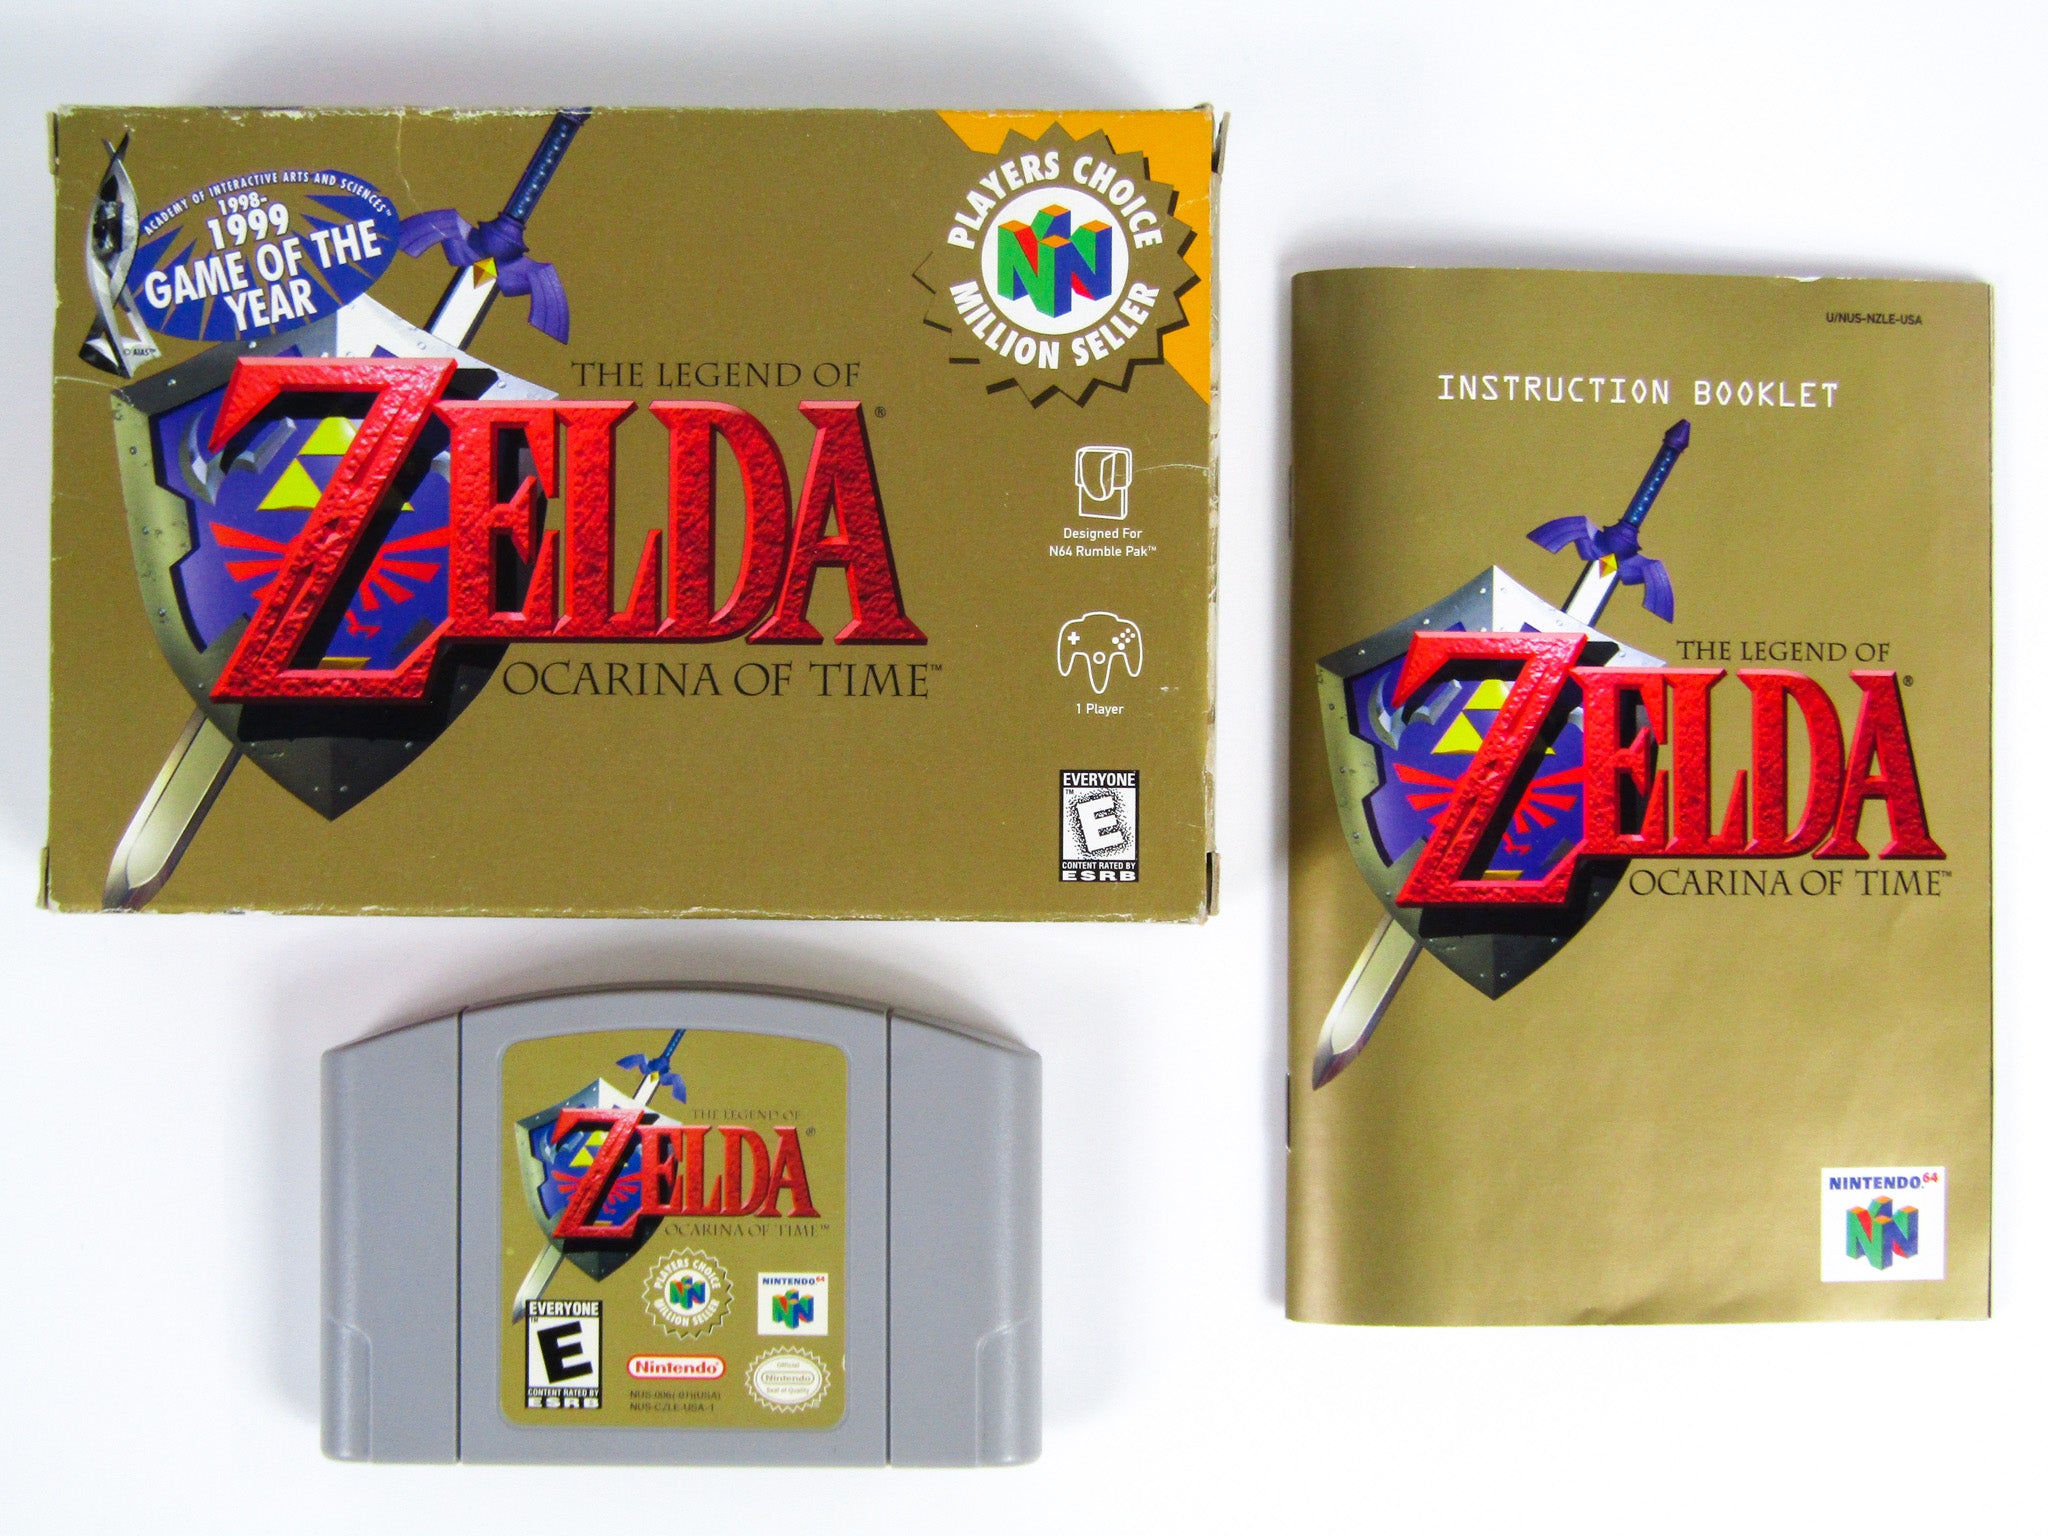 Nintendo, The Legend of Zelda: Ocarina of Time, Nintendo 64, 1998.